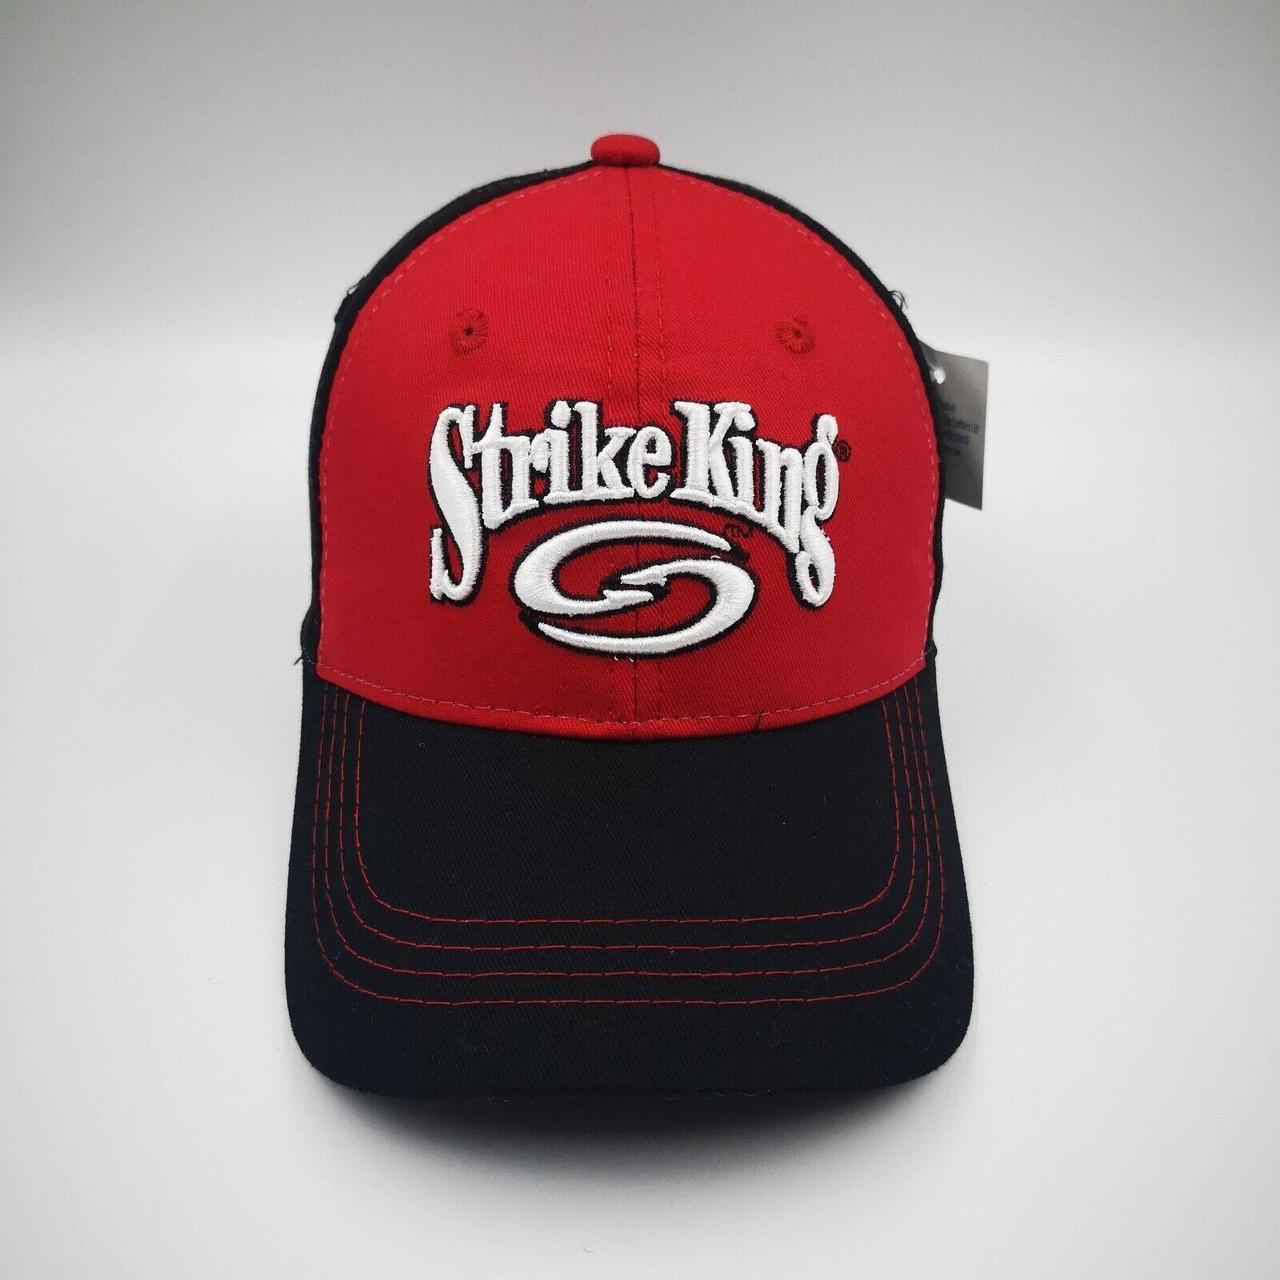 Strike King Fishing Lure Hat Cap Men's Strapback One